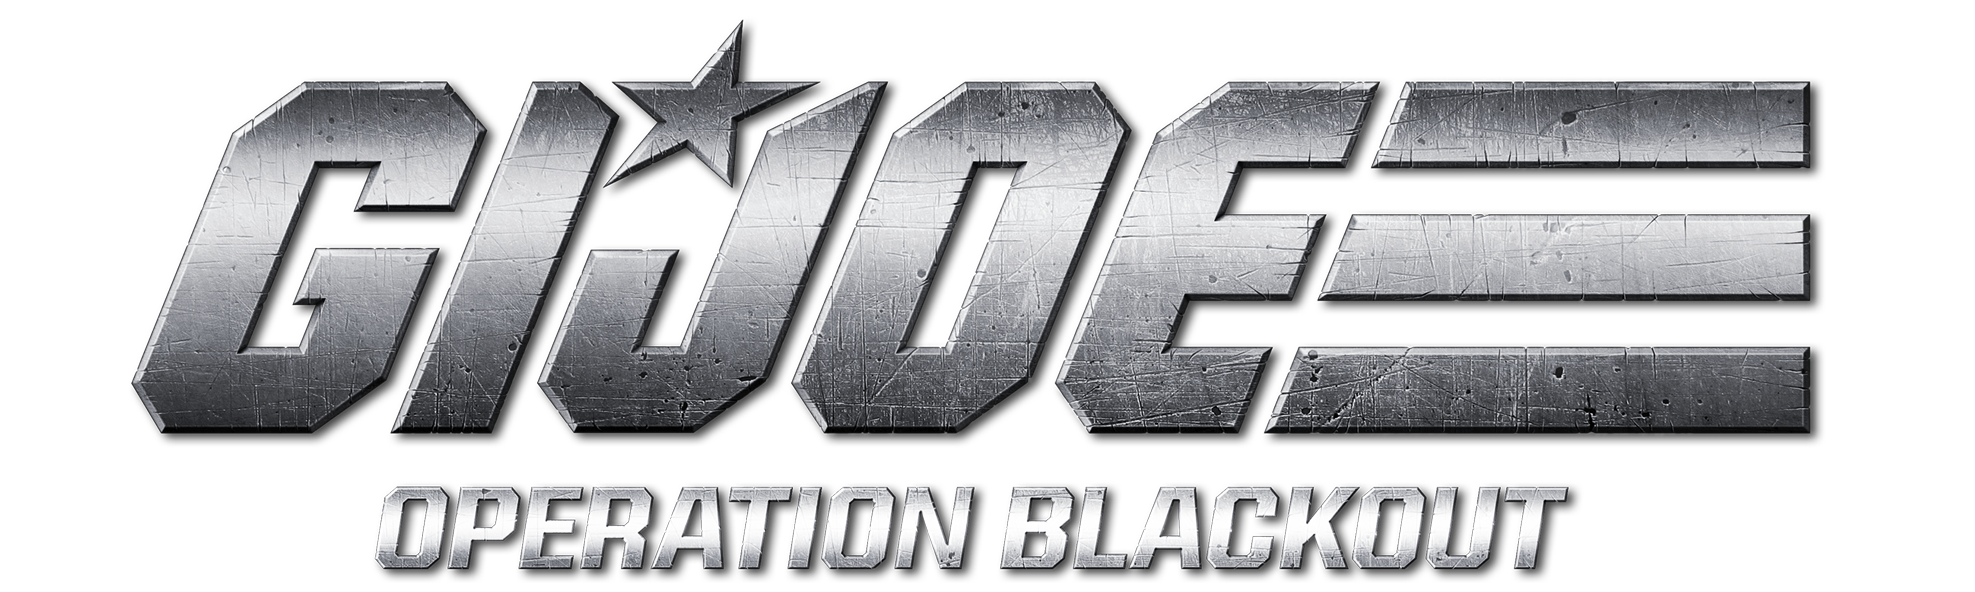 Compre agora o jogo G.I. Joe Operation Blackout para PS4 - Mídia